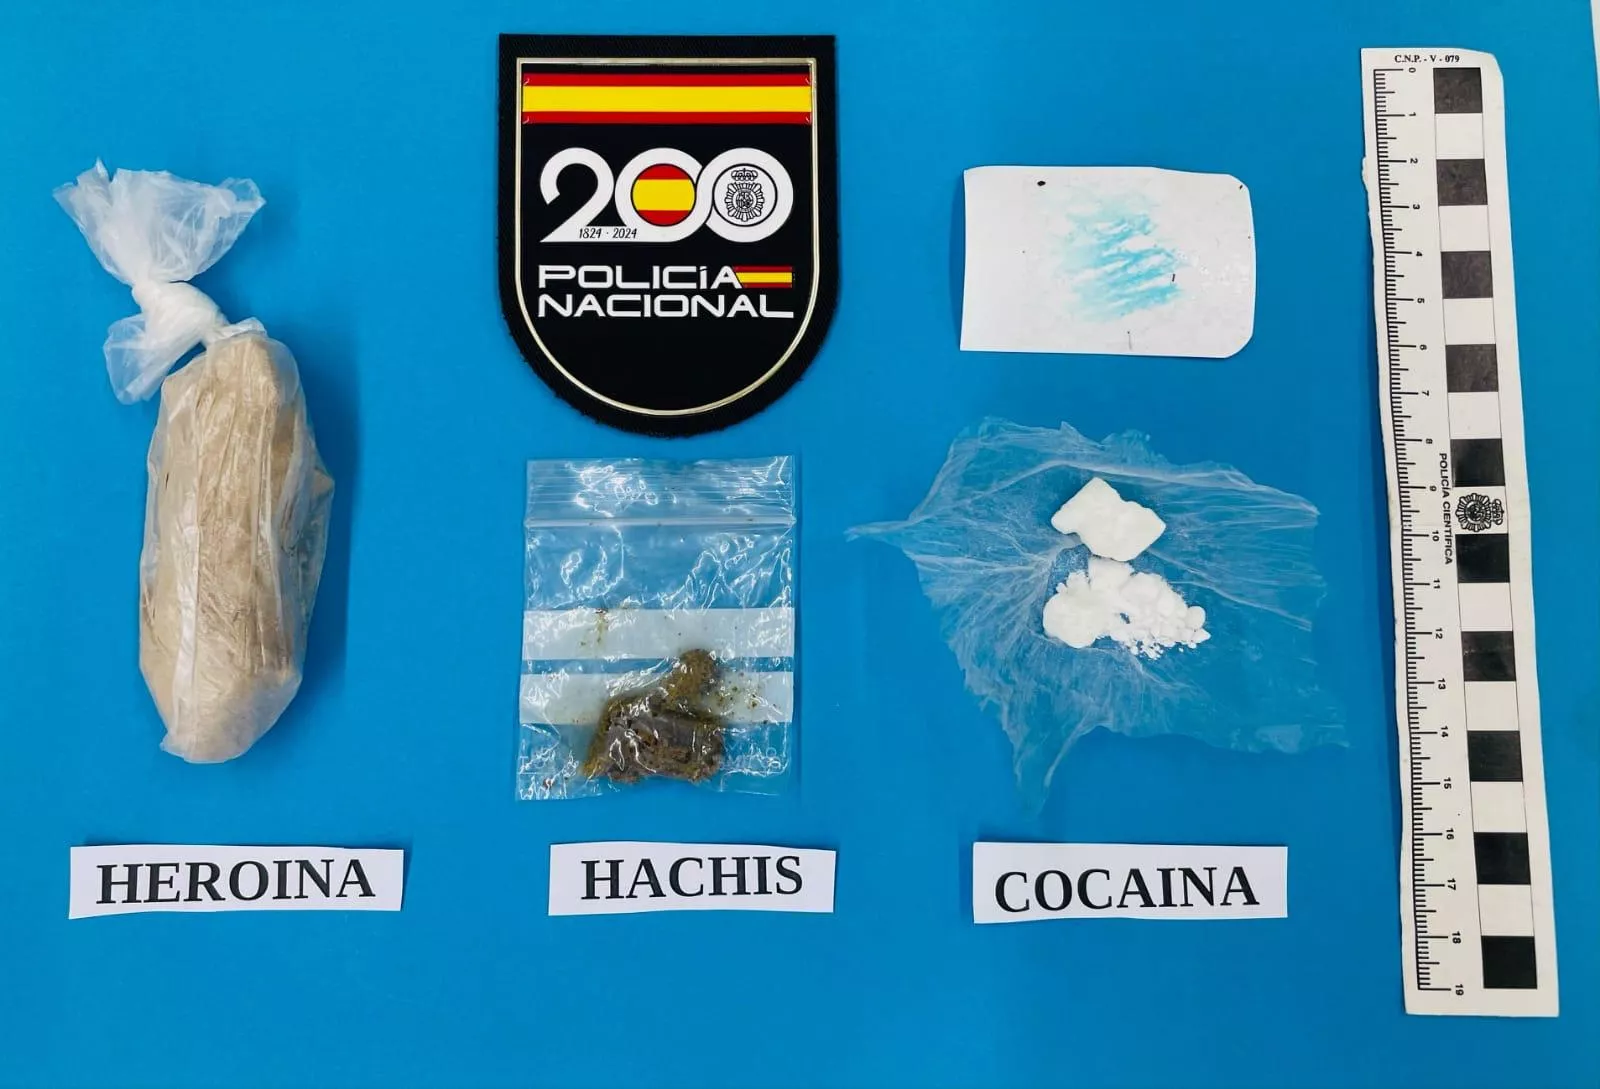 Desmantelado un punto de venta de drogas en la parte alta de Ponferrada tras las quejas vecinales